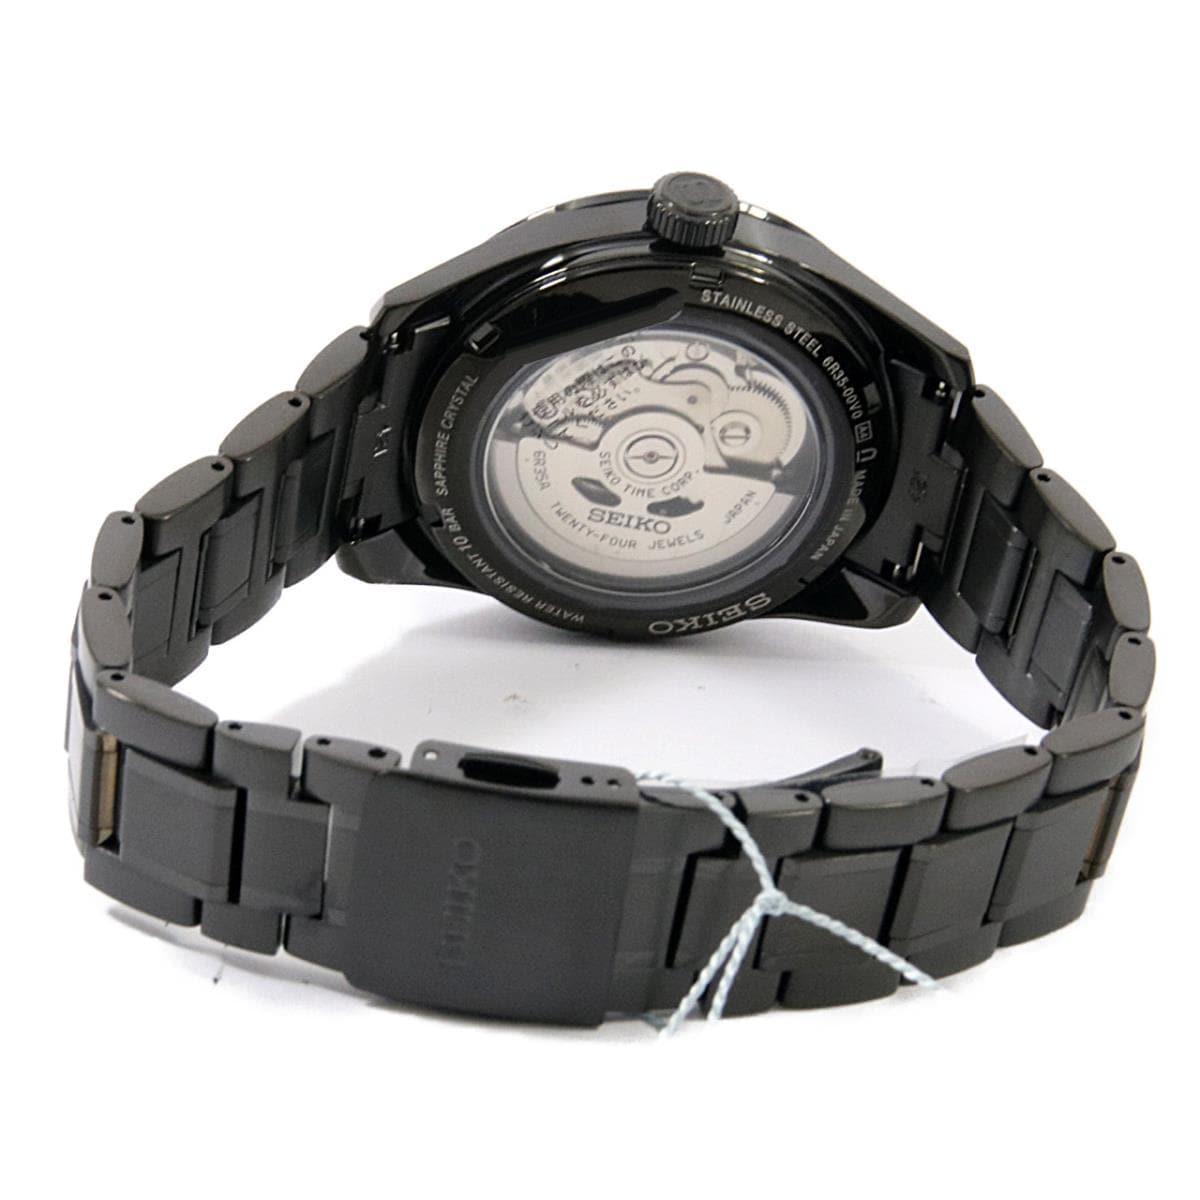 話題の行列 セイコー SEIKO プレザージュ コアショップ専用モデル SARX091 6R35-00V0 未使用 硬質コーティング 黒 バー メンズ  腕時計自動巻き ブラック 